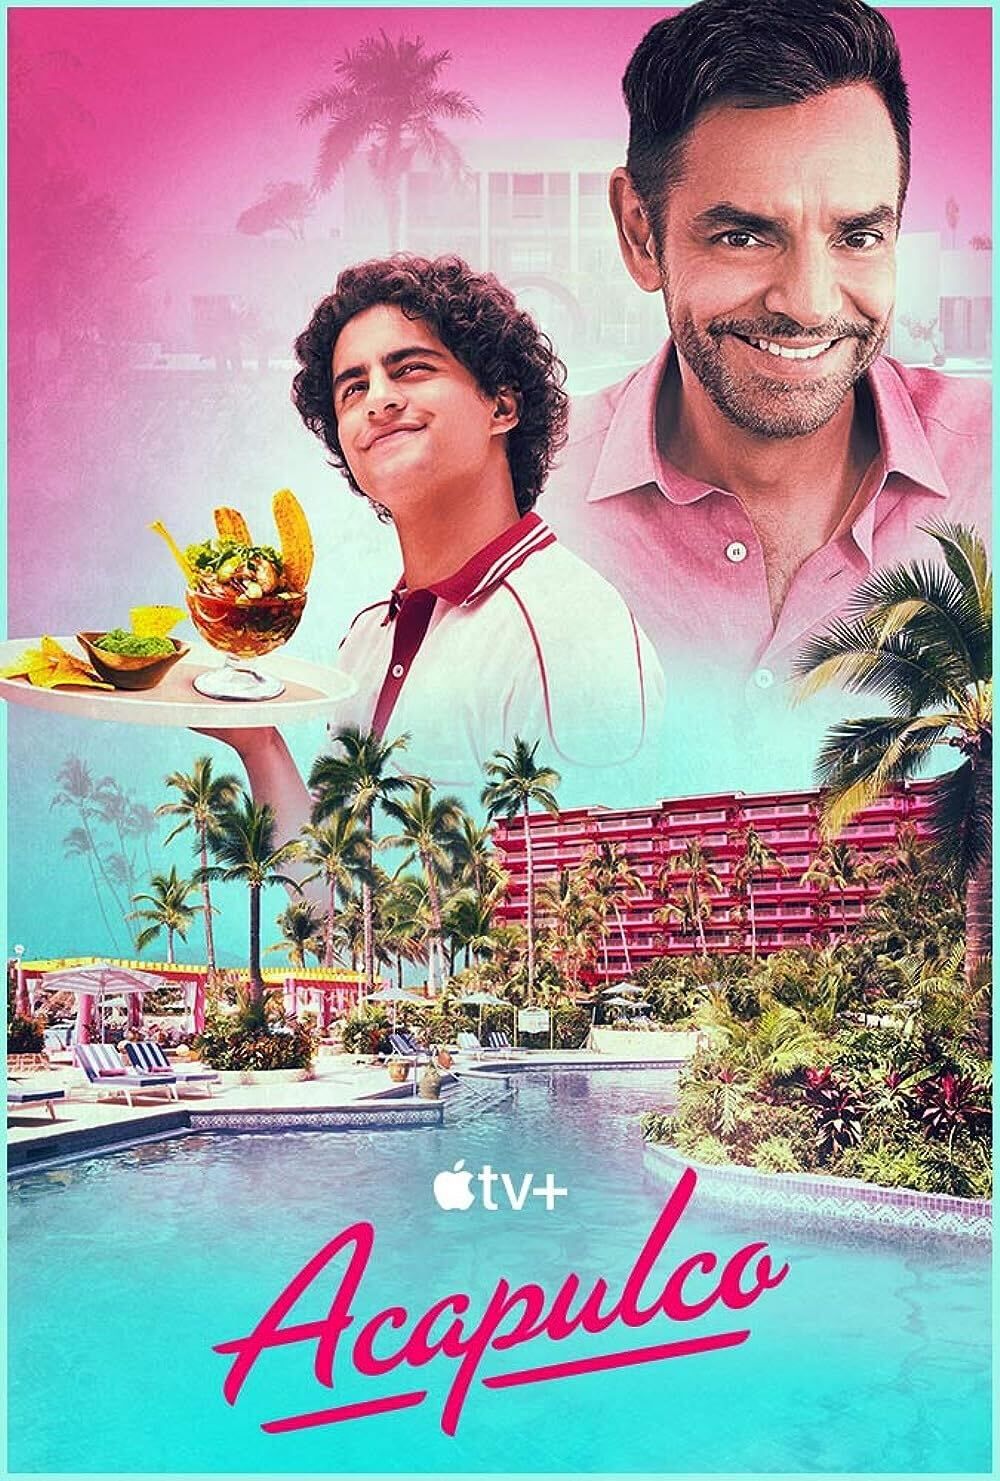 Eugenio Derbez as Maximo Gallardo Ra wearing a pink shirt in the poster for Acapulco